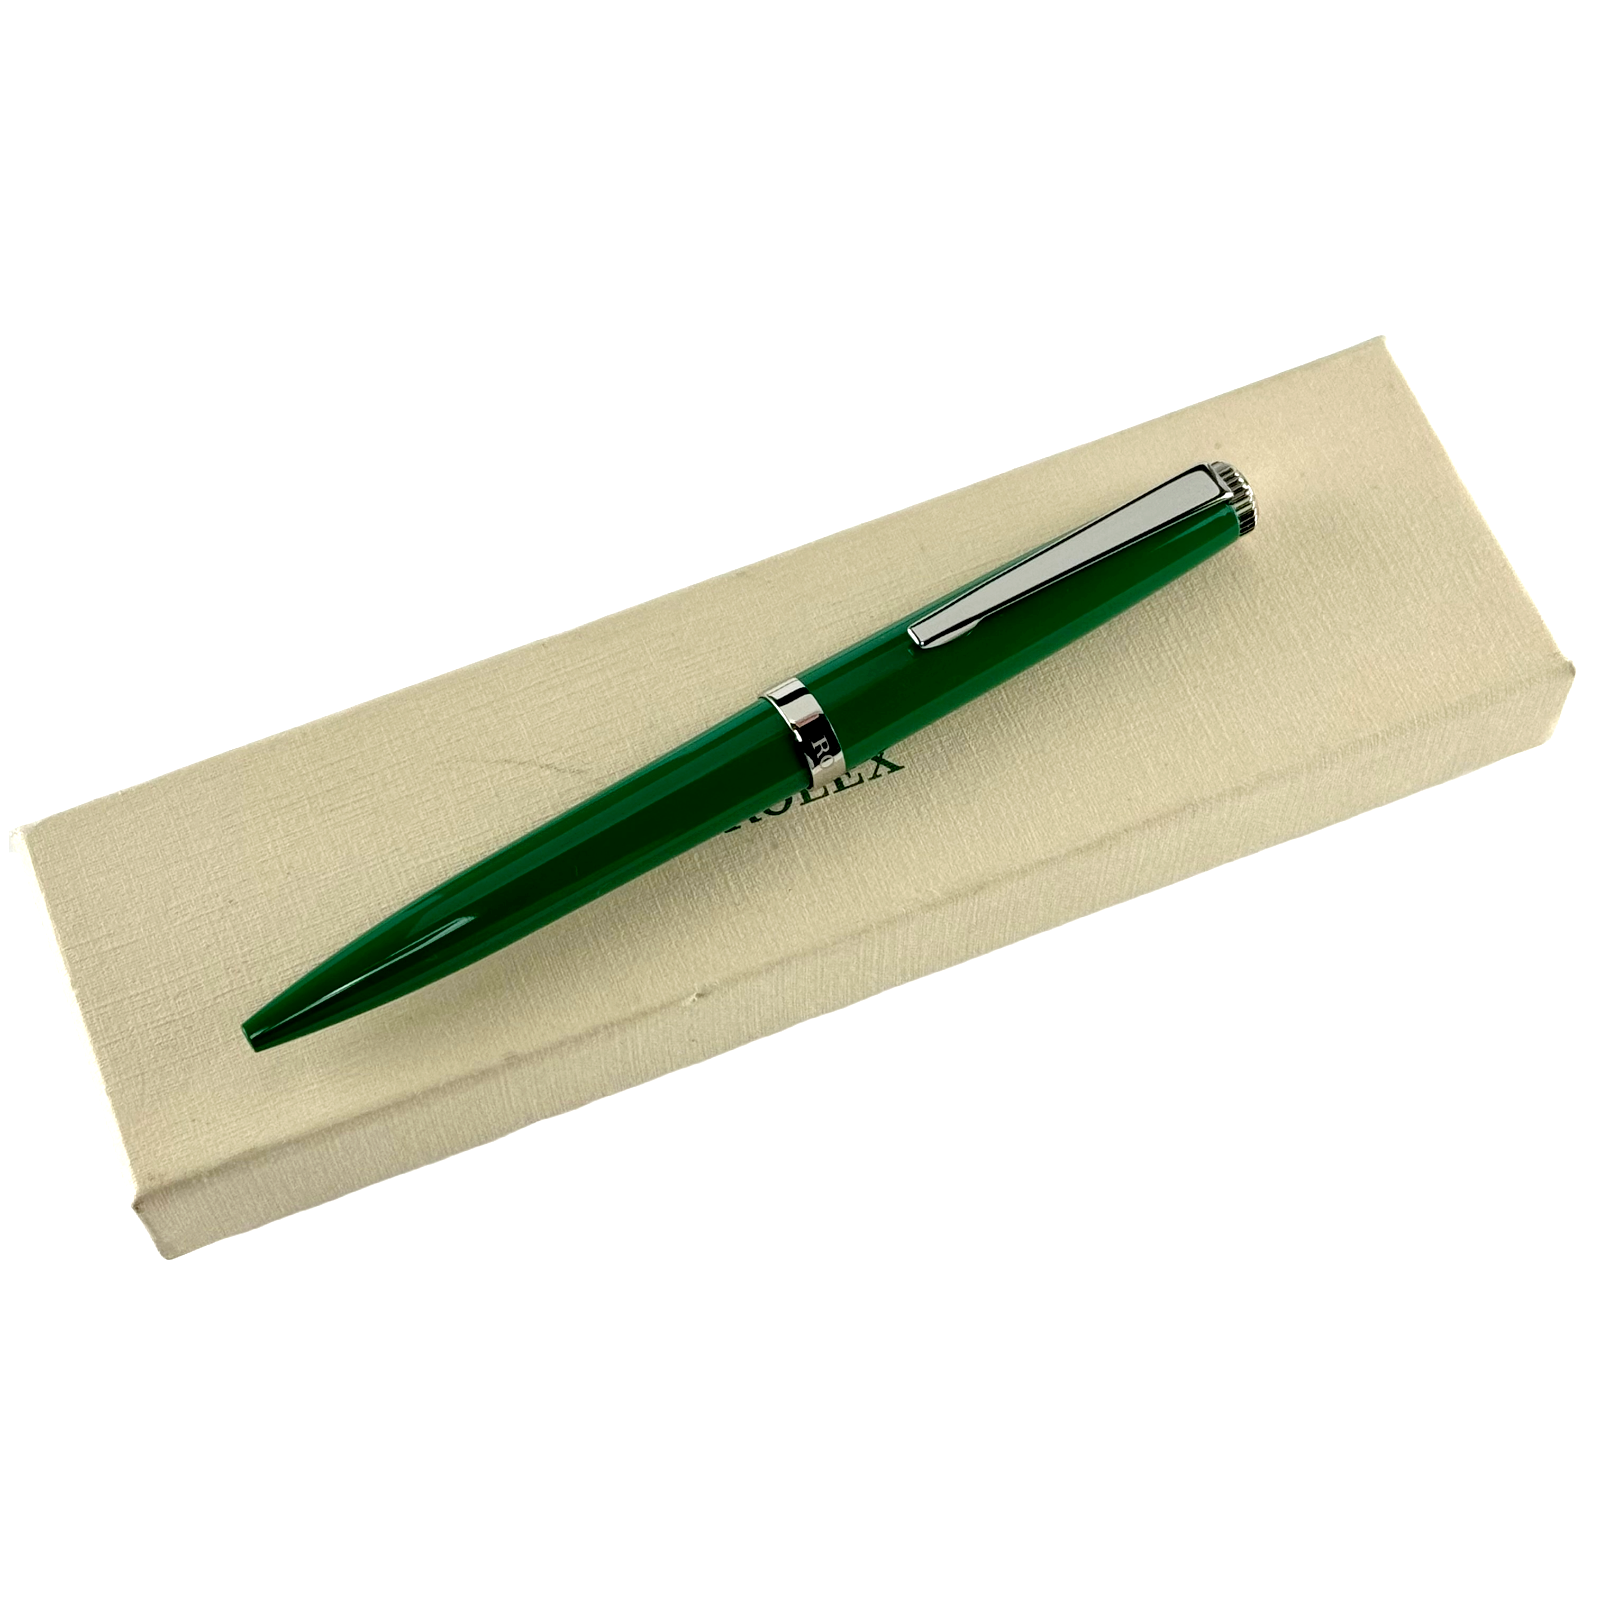  Rolex Kugelschreiber Drehkugelschreiber Kuli Stift ballpoint pen Grün green OVP